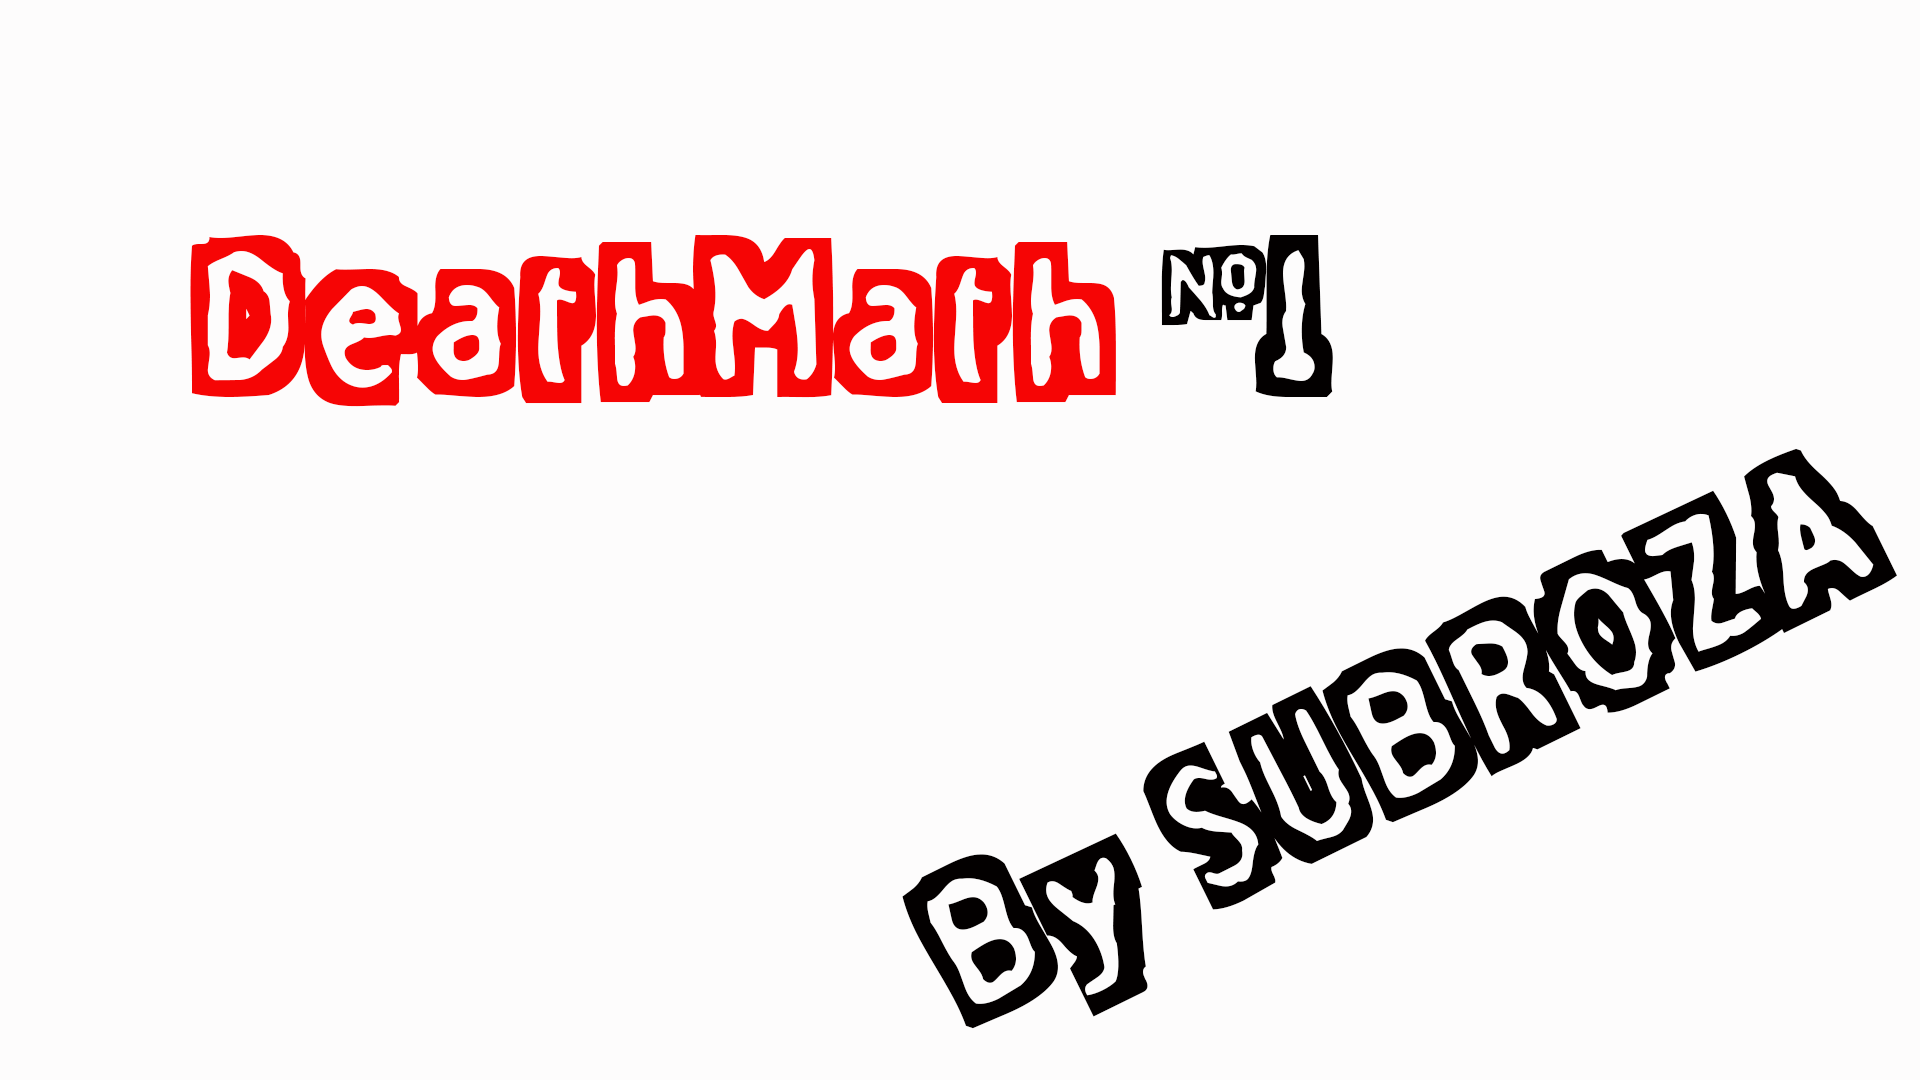 Скачать Пак №1 DeathMath бесплатно